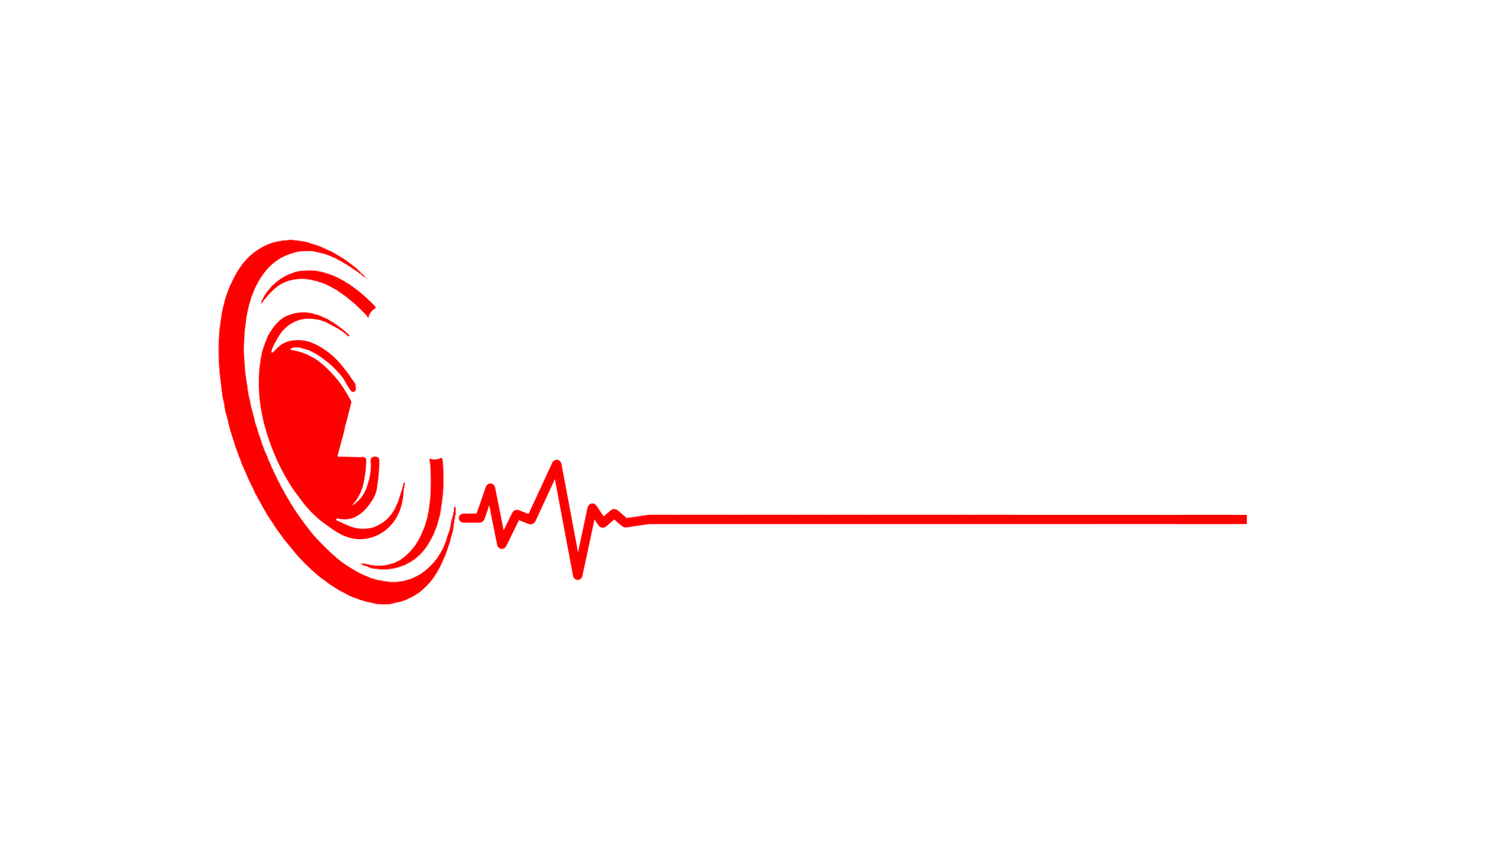 Synergy Audio